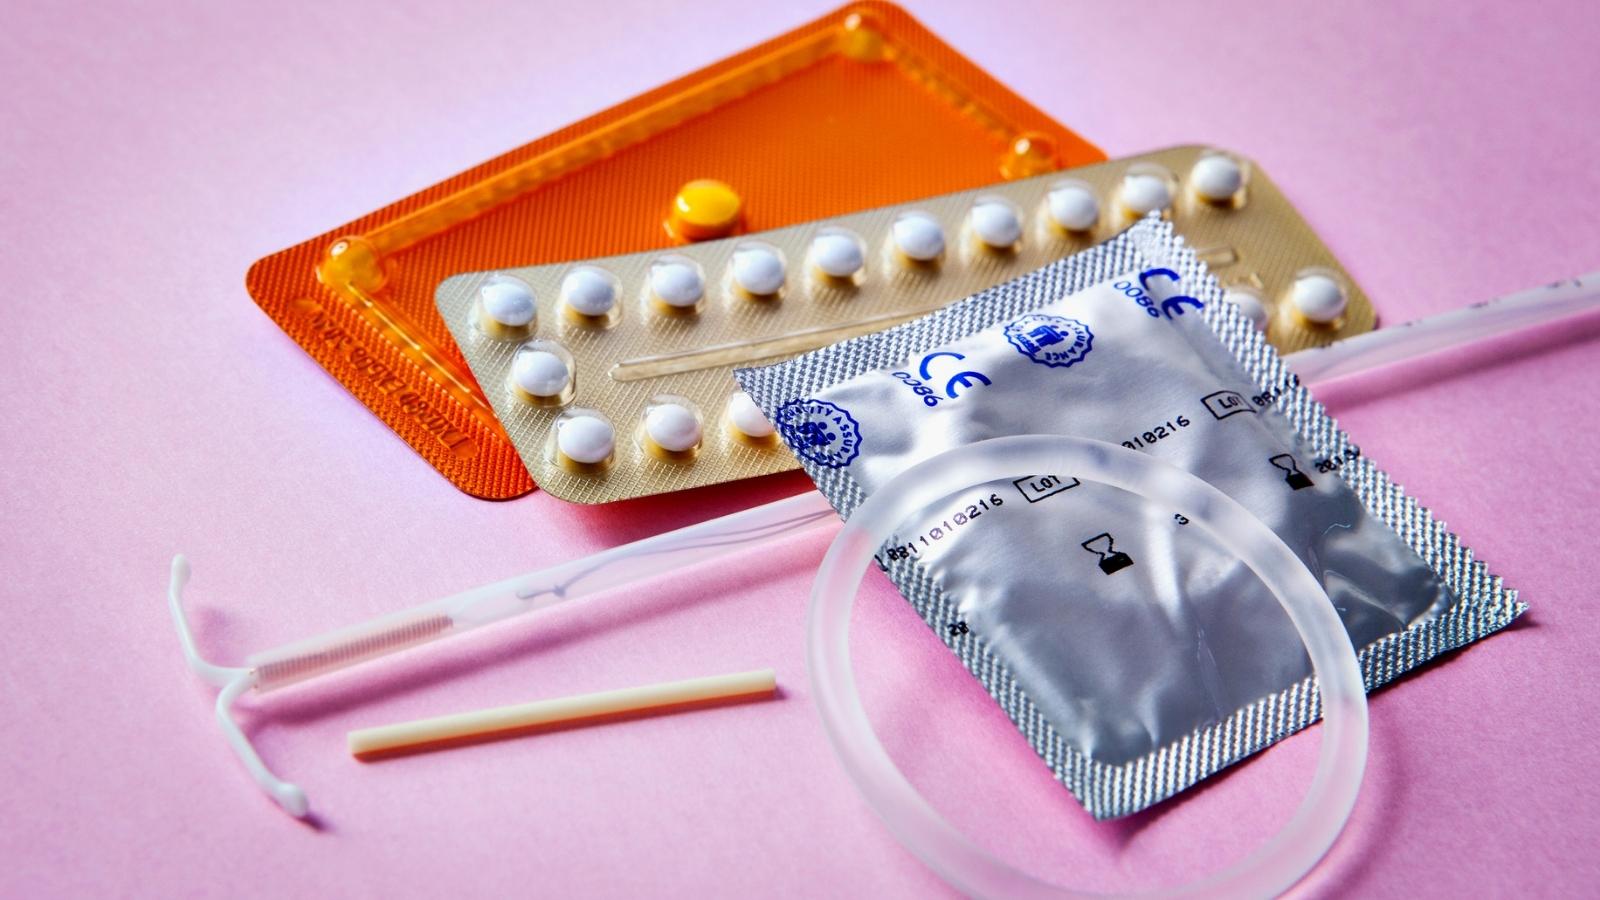 La pillola contraccettiva - Capire i propri sogni - Kaya